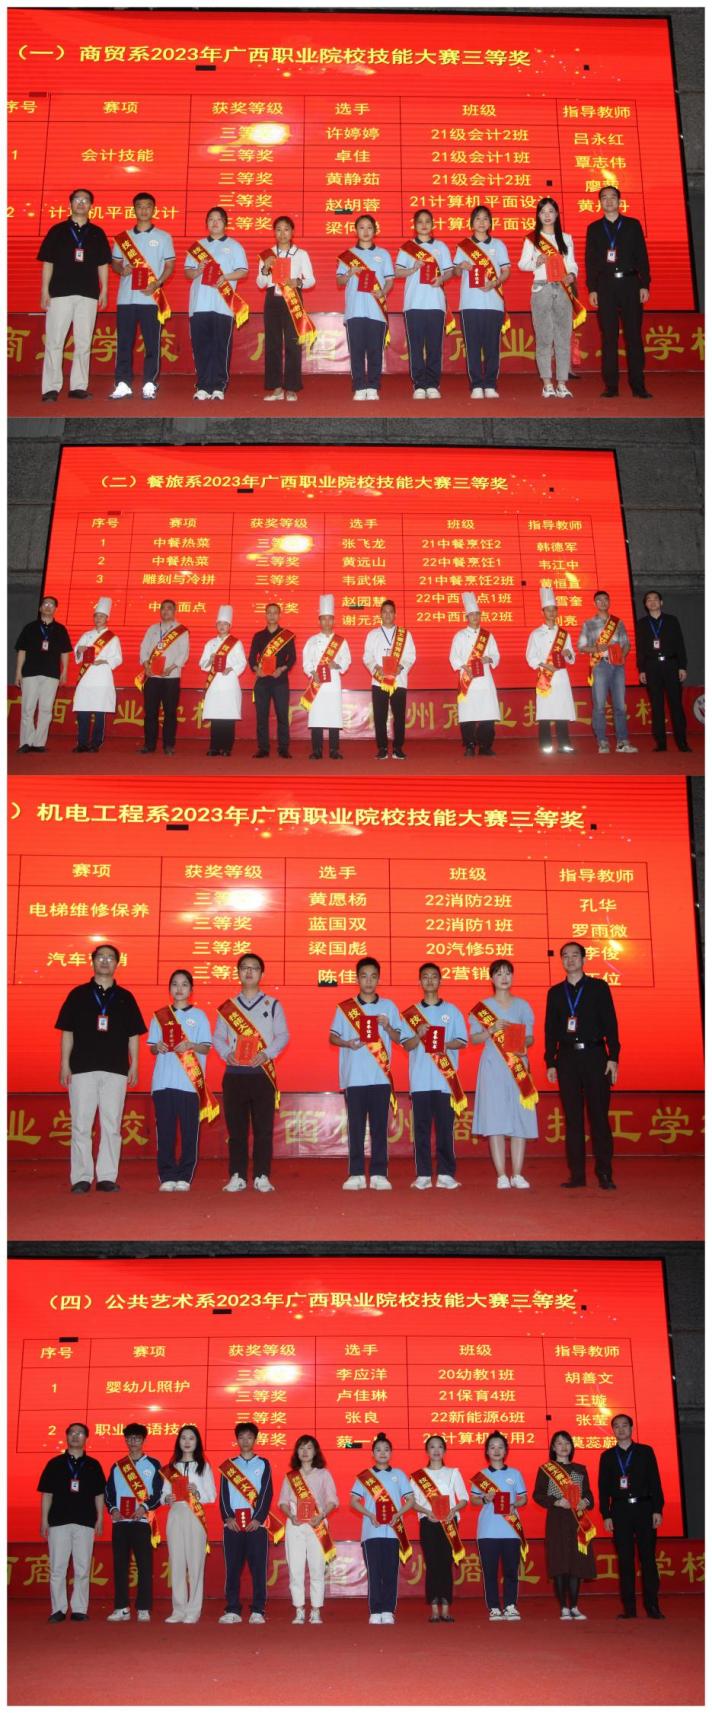 6.学校党委副书记、纪委书记、副校长农安航（左一）与副校长黄强新（右一）给获得三等奖选手及指导老师颁奖